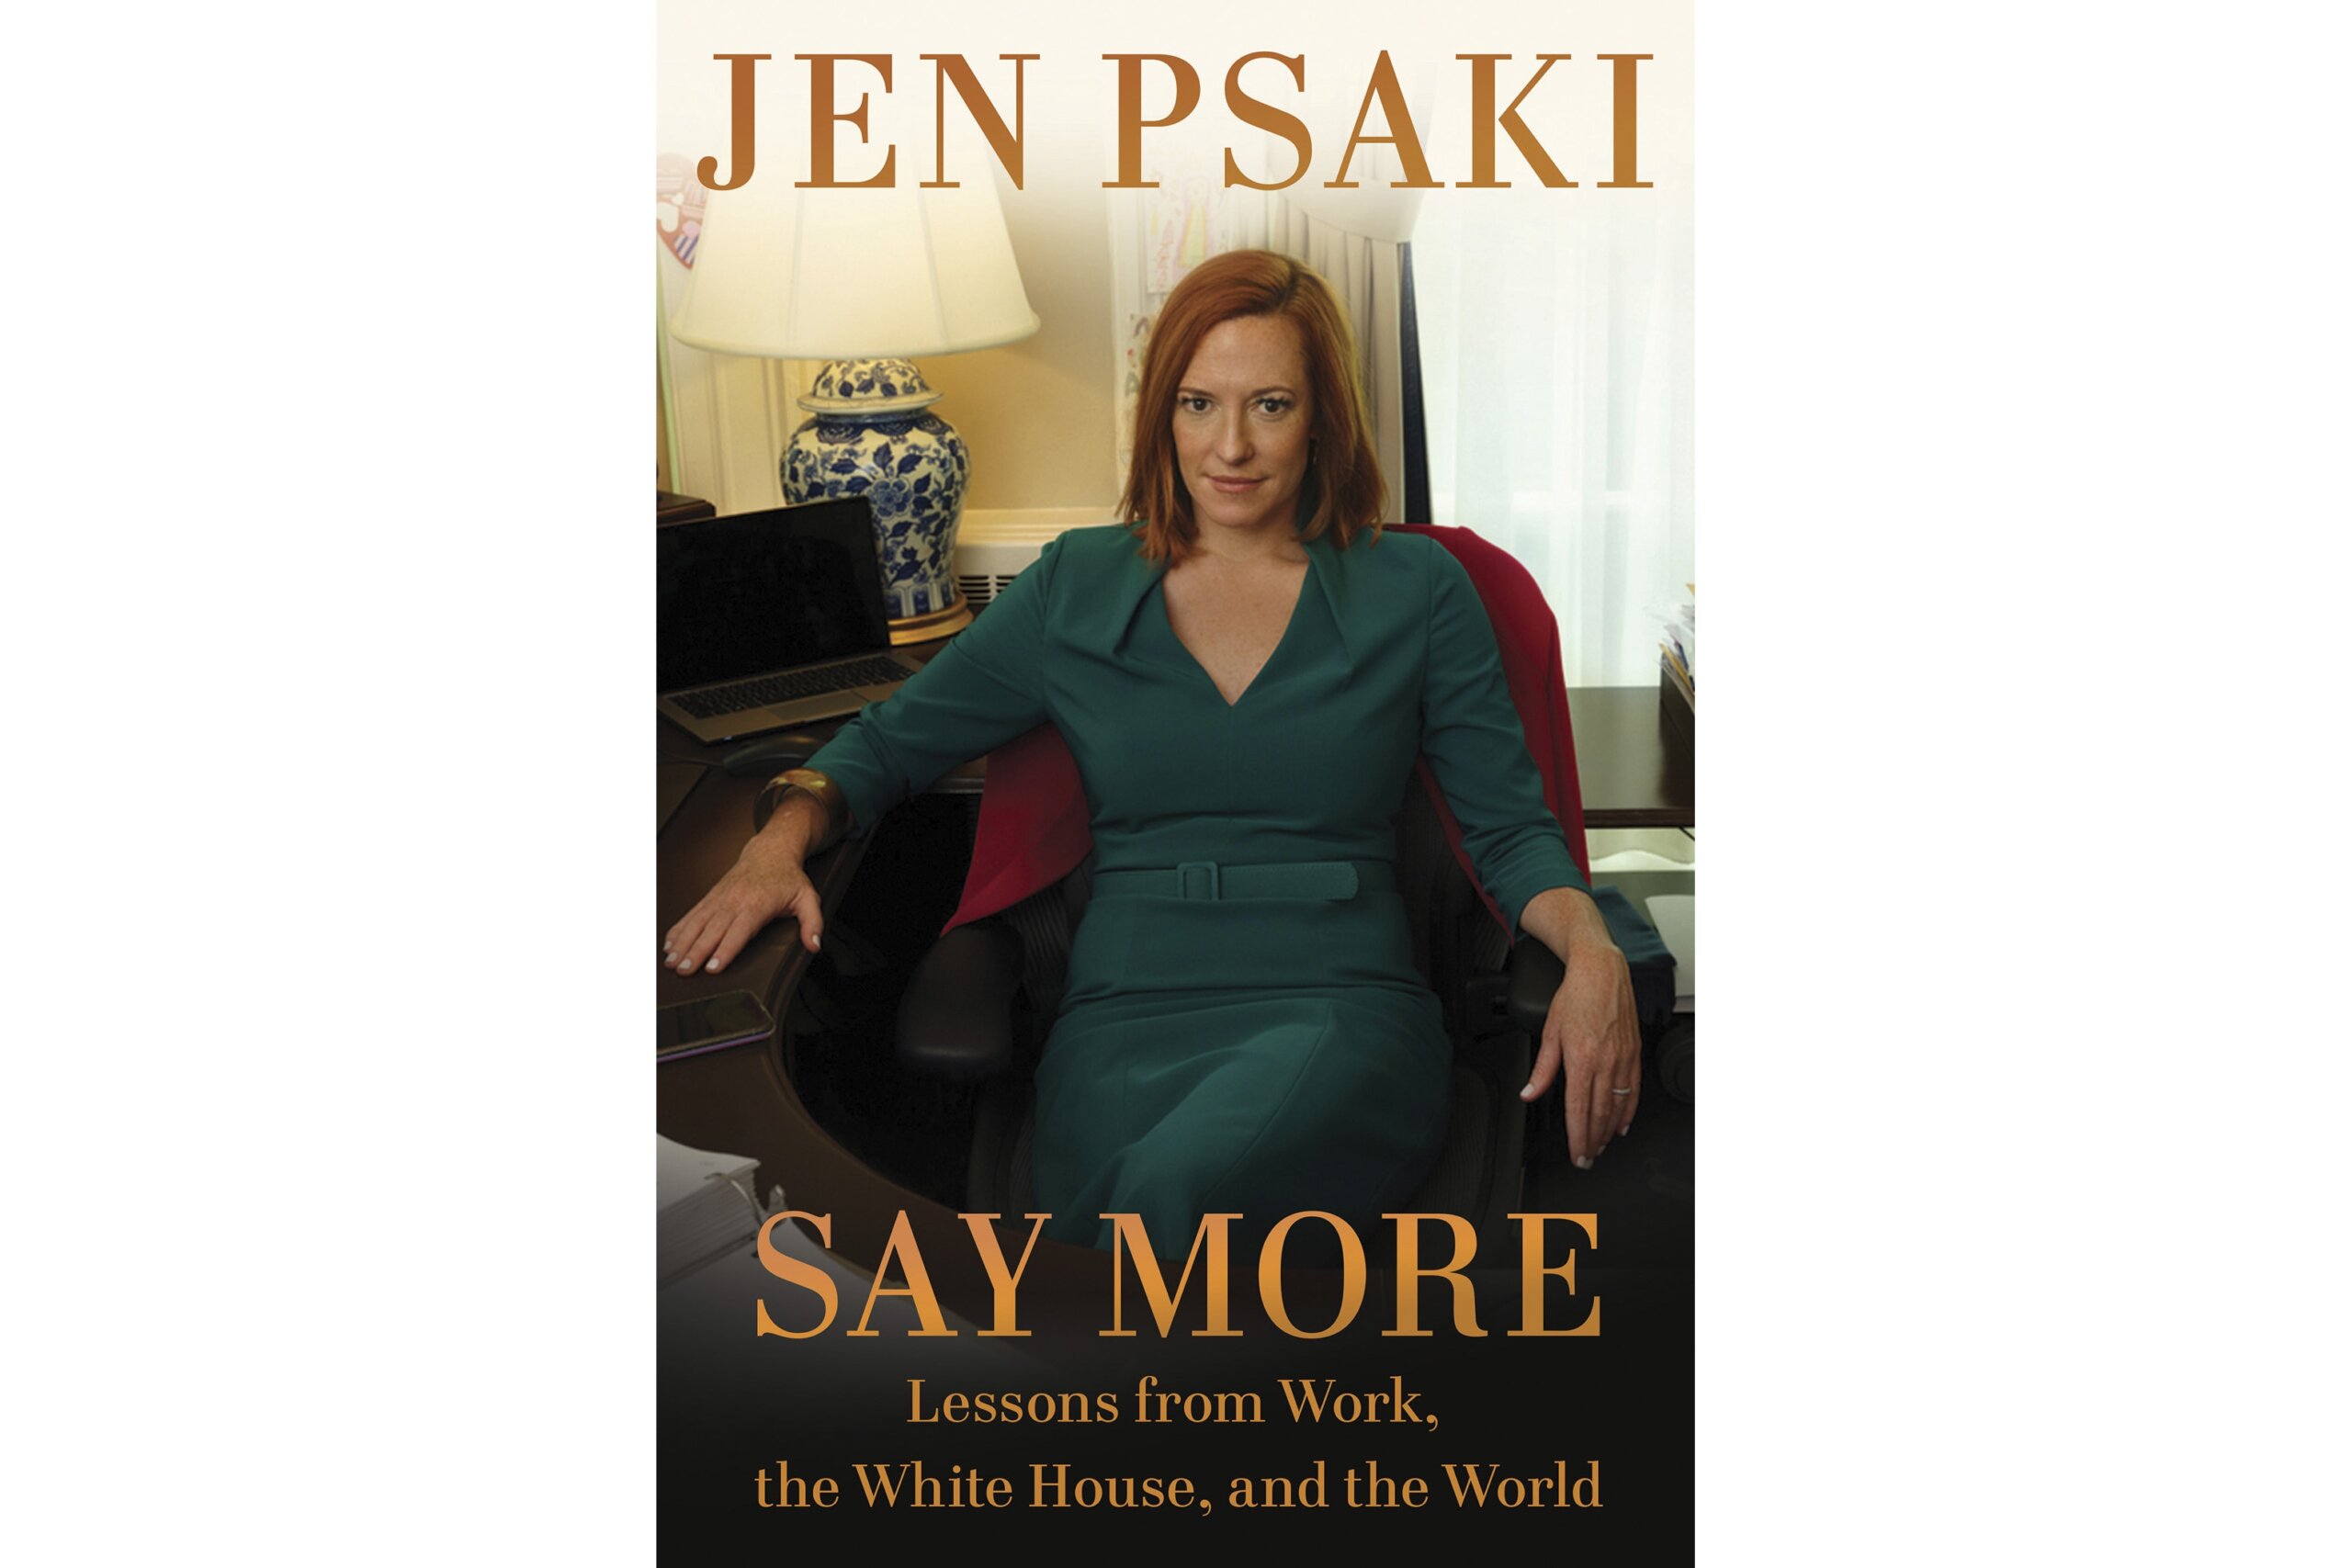 前白宫新闻秘书詹·普萨基在《Say More》一书中回顾了她在政府工作的岁月